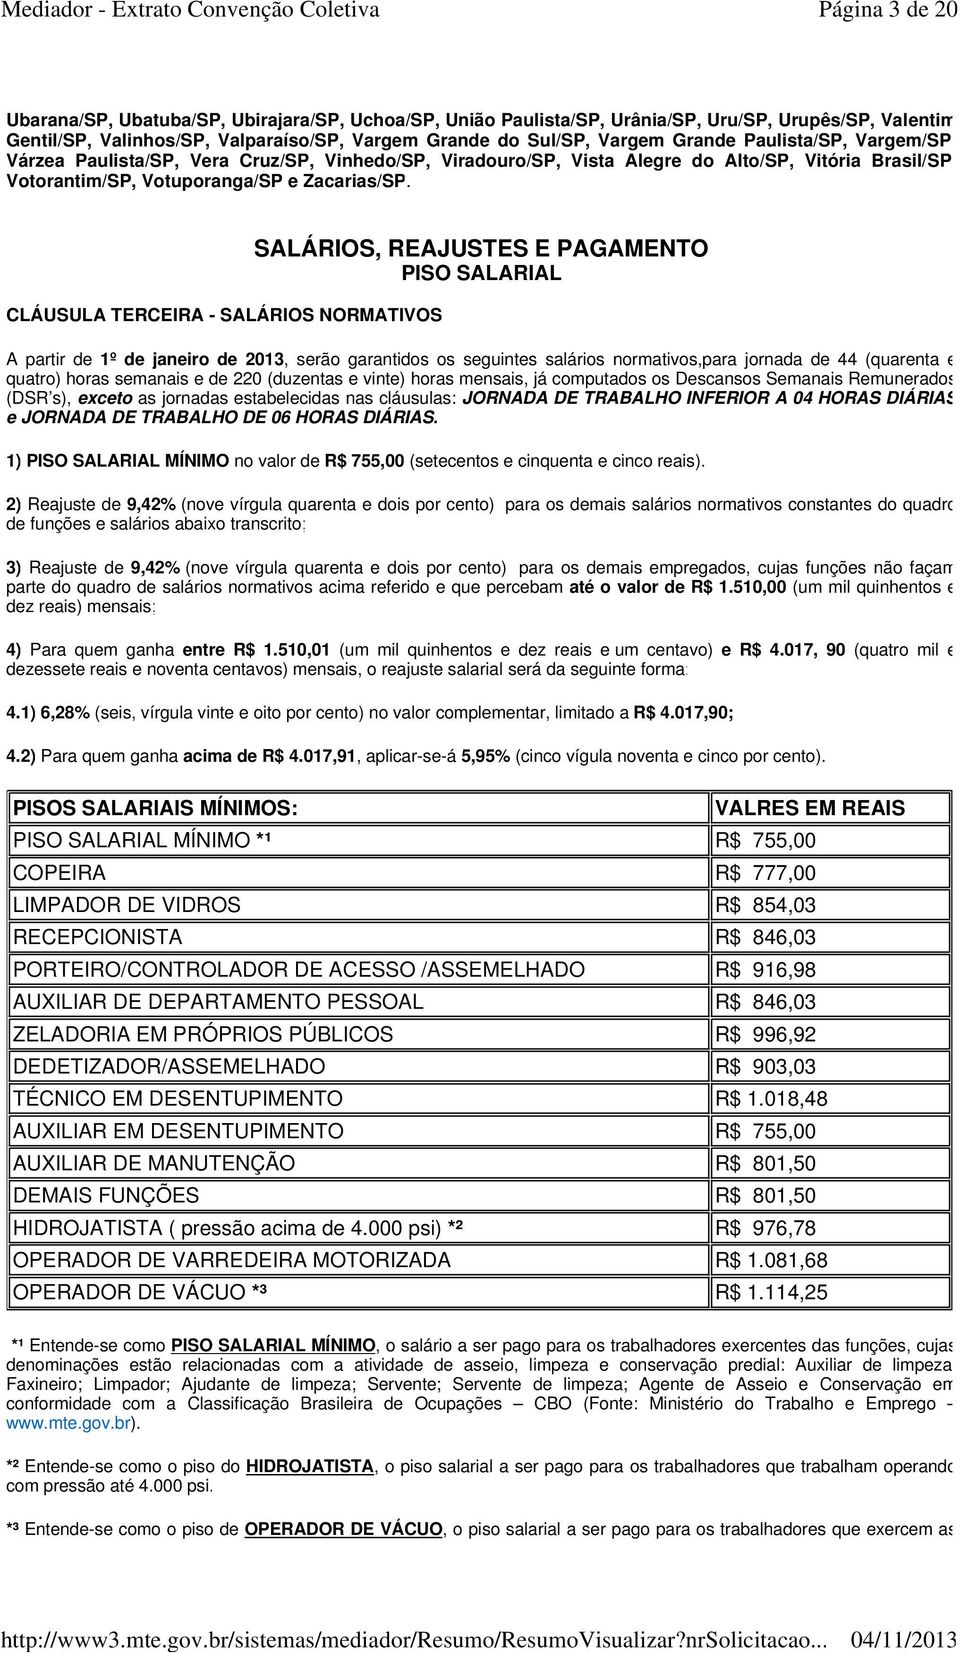 CLÁUSULA TERCEIRA - SALÁRIOS NORMATIVOS SALÁRIOS, REAJUSTES E PAGAMENTO PISO SALARIAL A partir de 1º de janeiro de 2013, serão garantidos os seguintes salários normativos,para jornada de 44 (quarenta